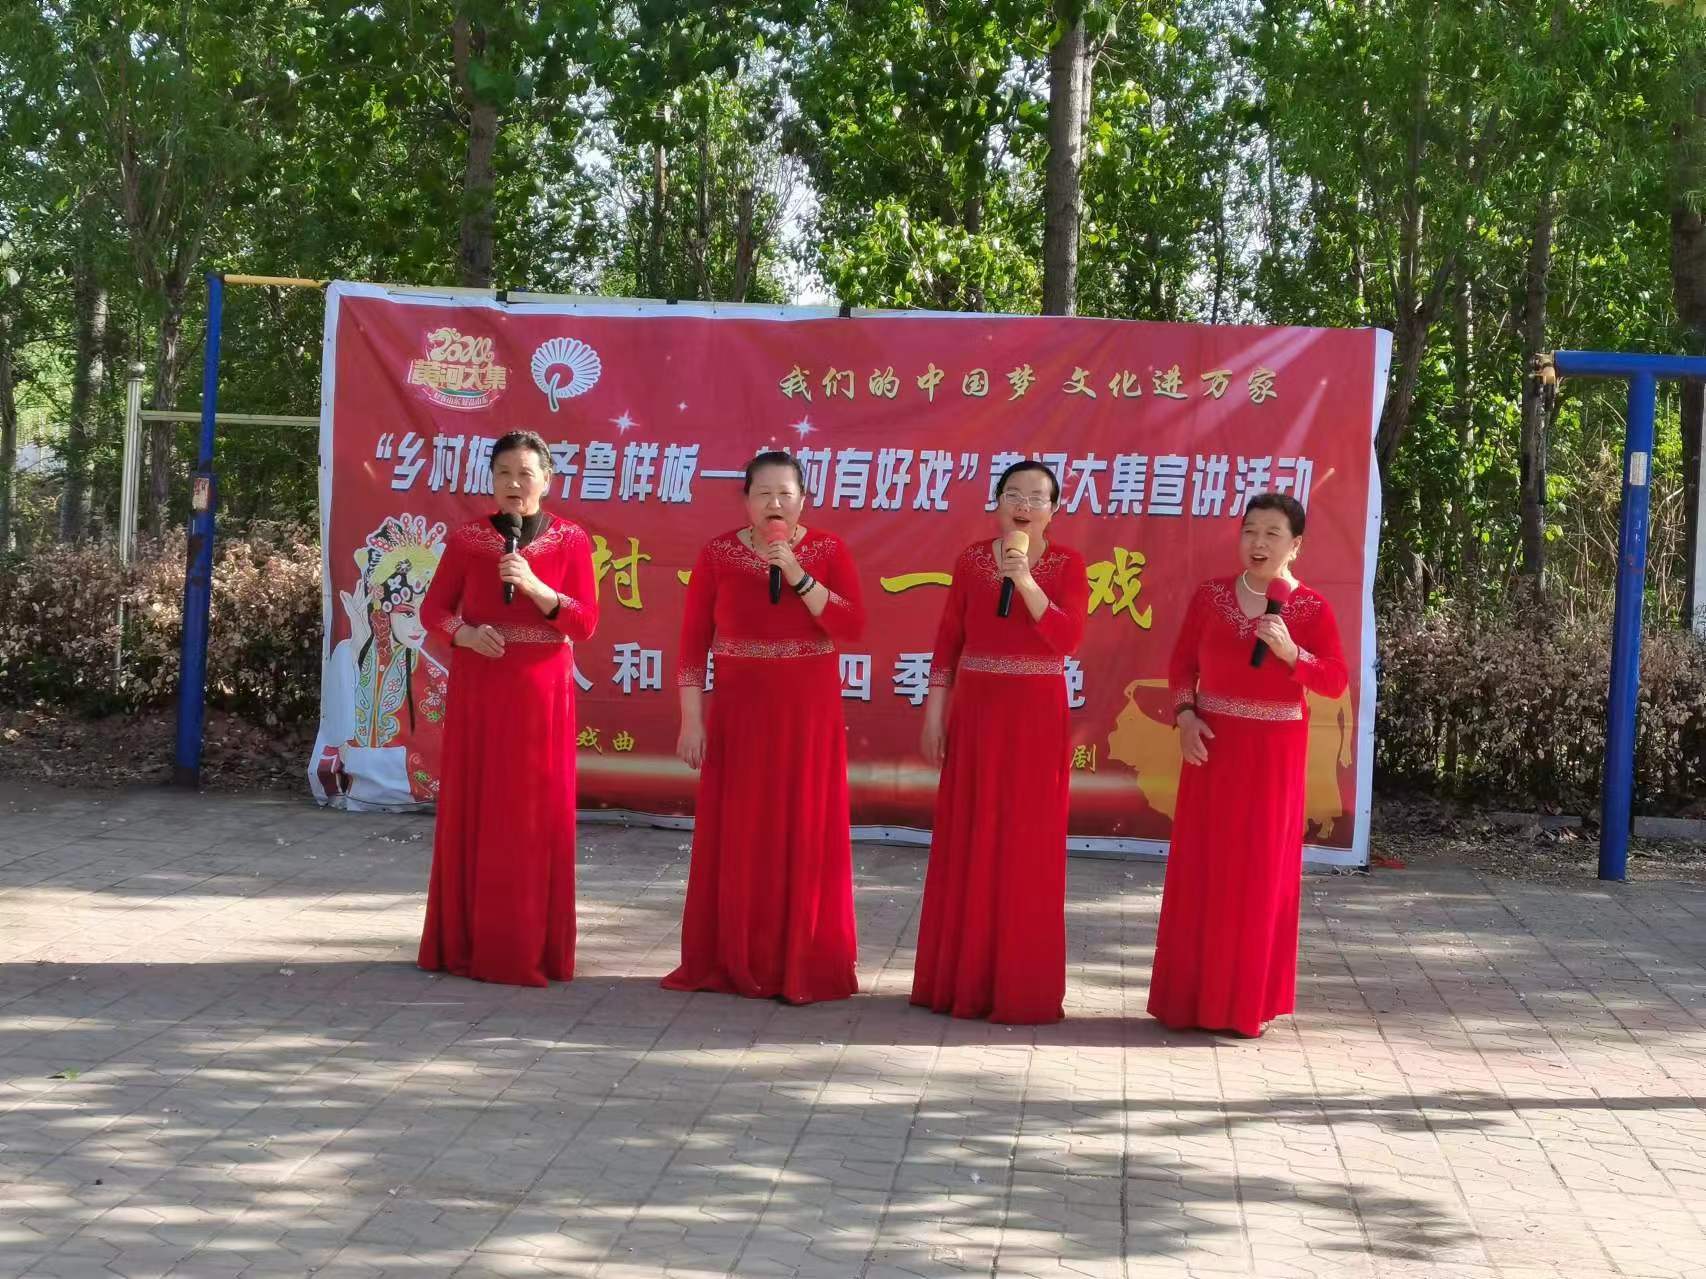 高唐县人和街道“我们的中国梦 文化进万家”“一村一年一场戏”文化惠民演出活动